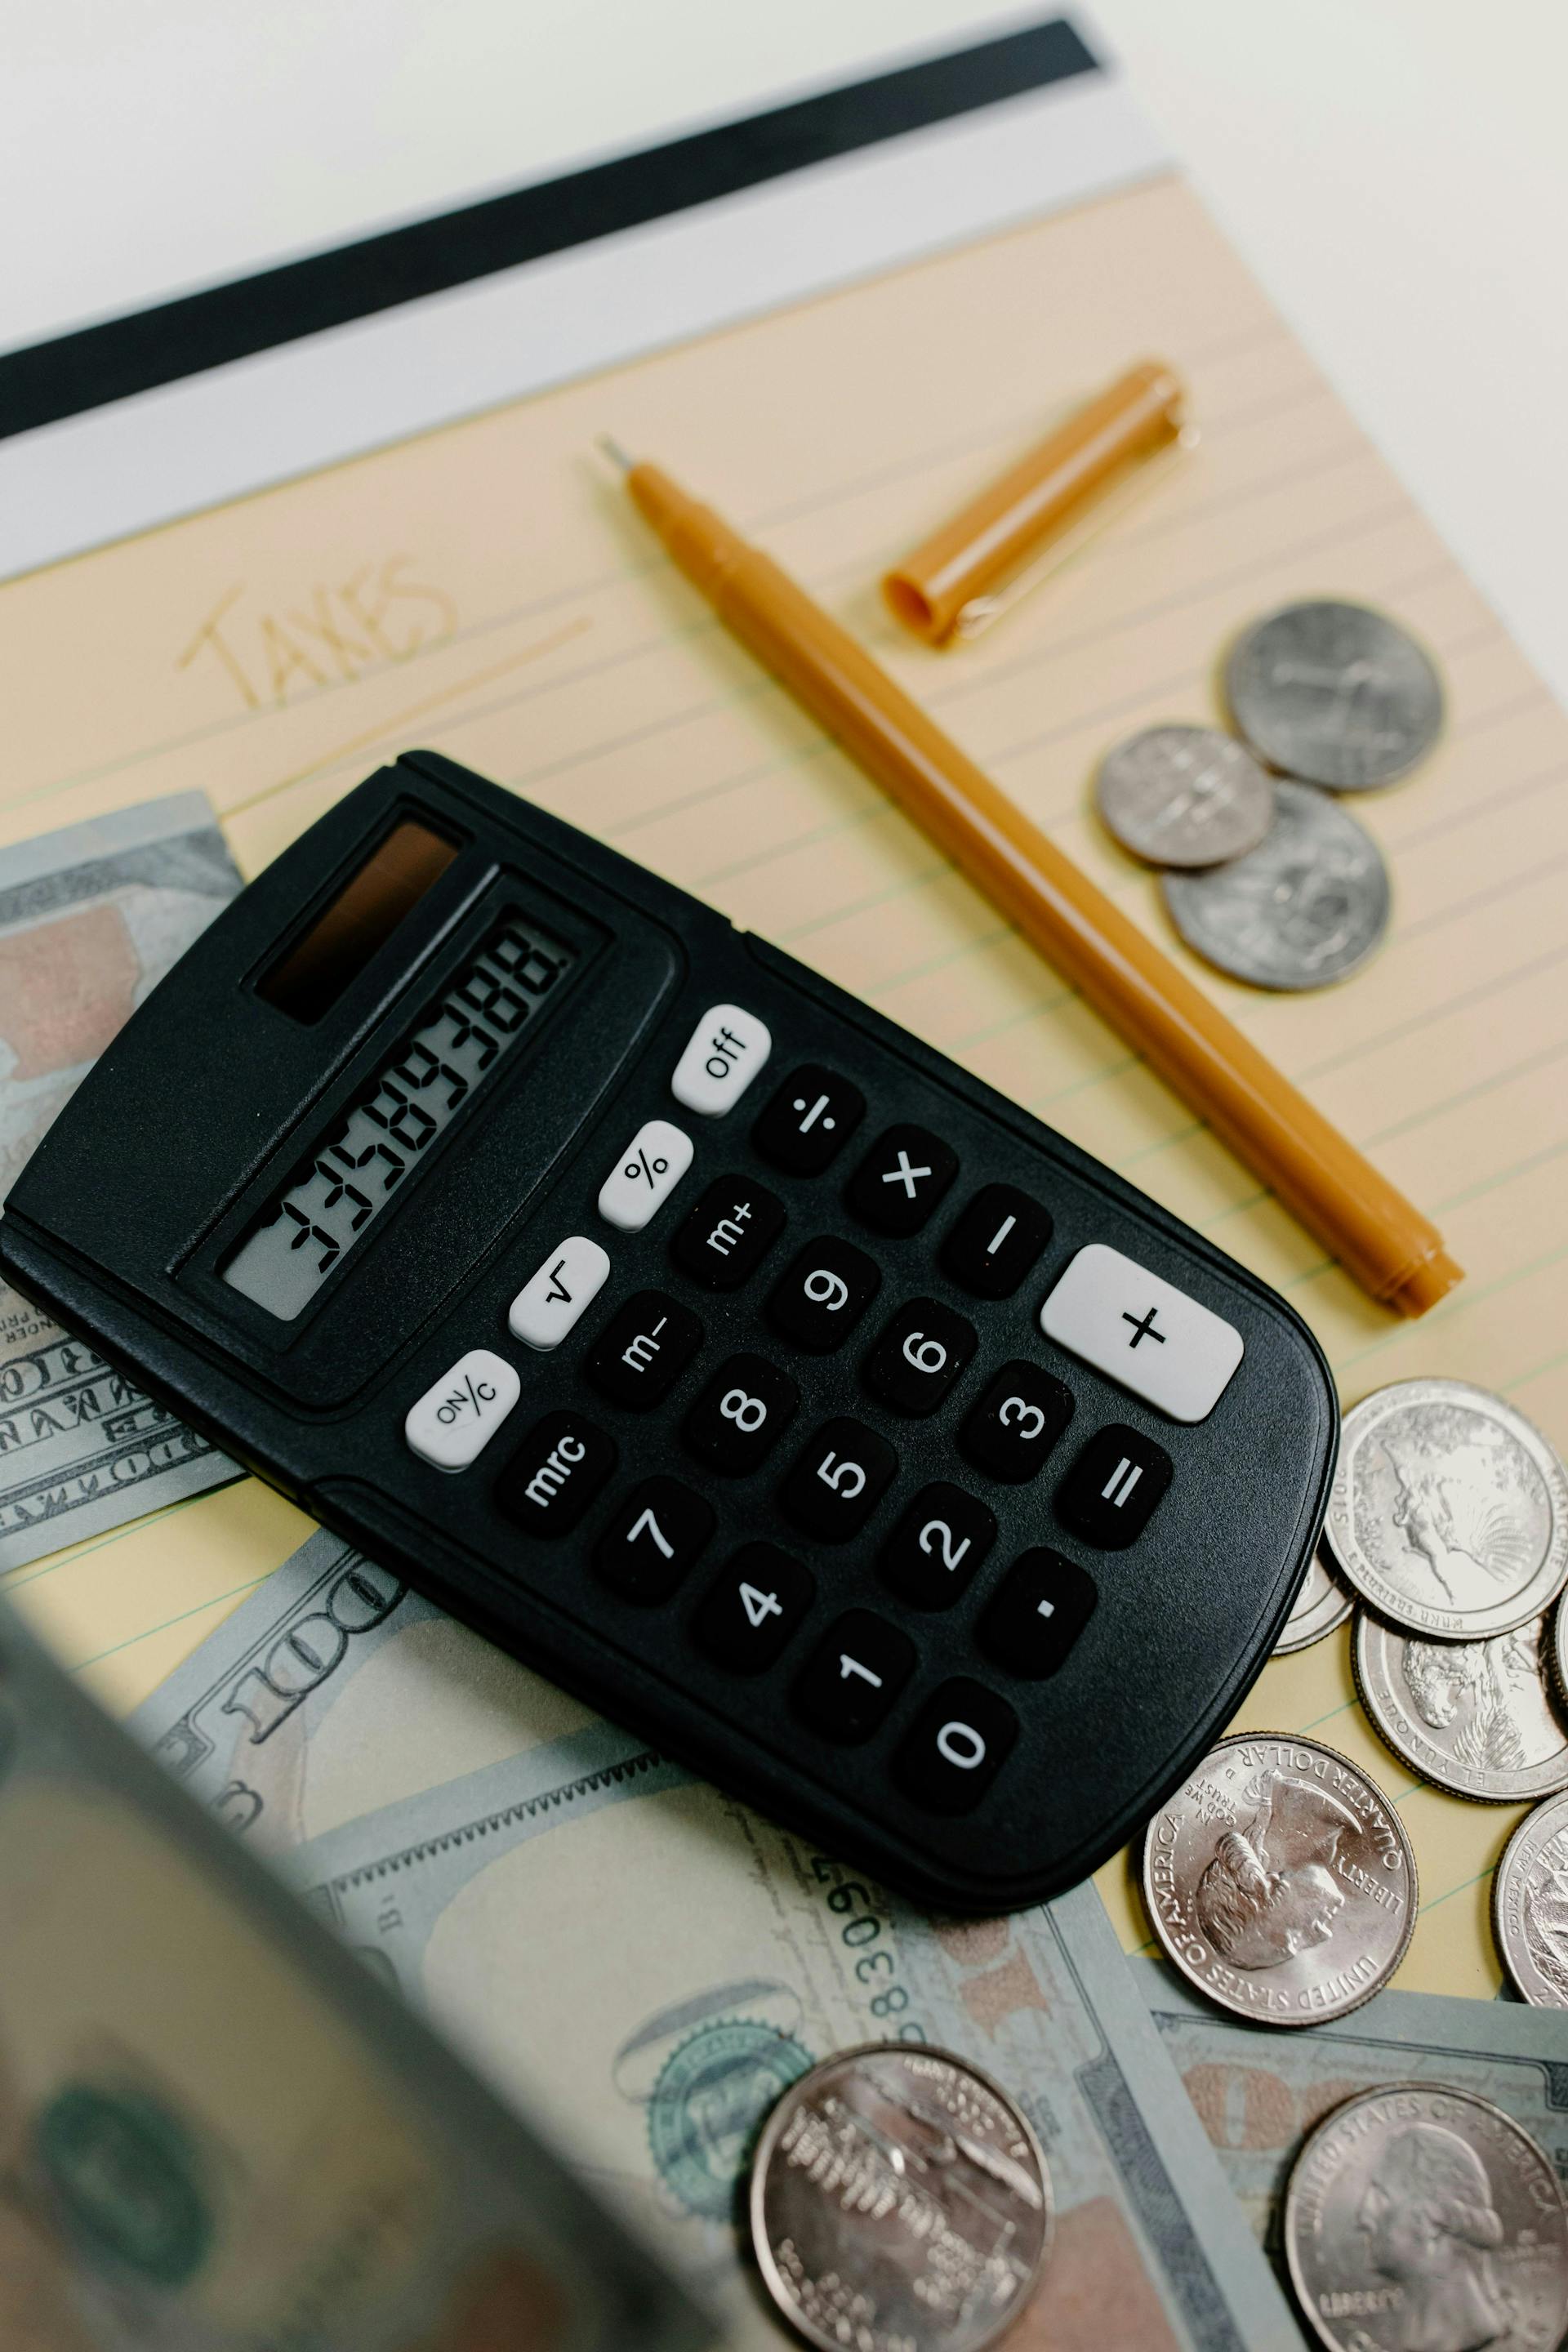 Deze foto toont een rekenmachine waar geld omheen ligt. Dit alles ligt weer op een kladblok